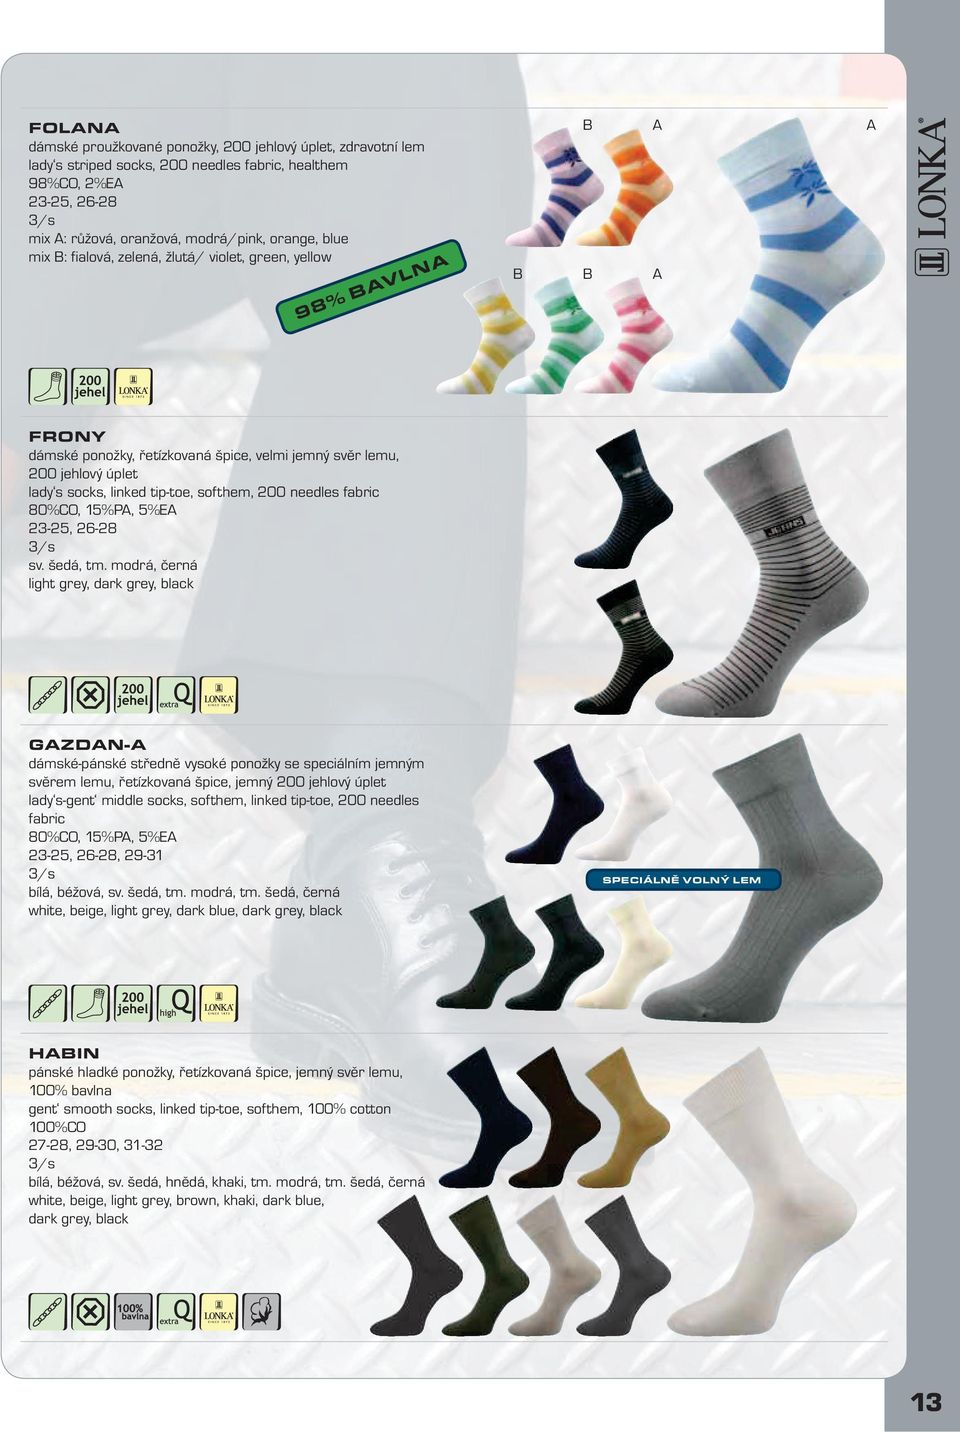 modrá, černá light grey, dark grey, black GZDN- dámské-pánské středně vysoké ponožky se speciálním jemným svěrem lemu, řetízkovaná špice, jemný lady s-gent middle socks, softhem, linked tip-toe, 200